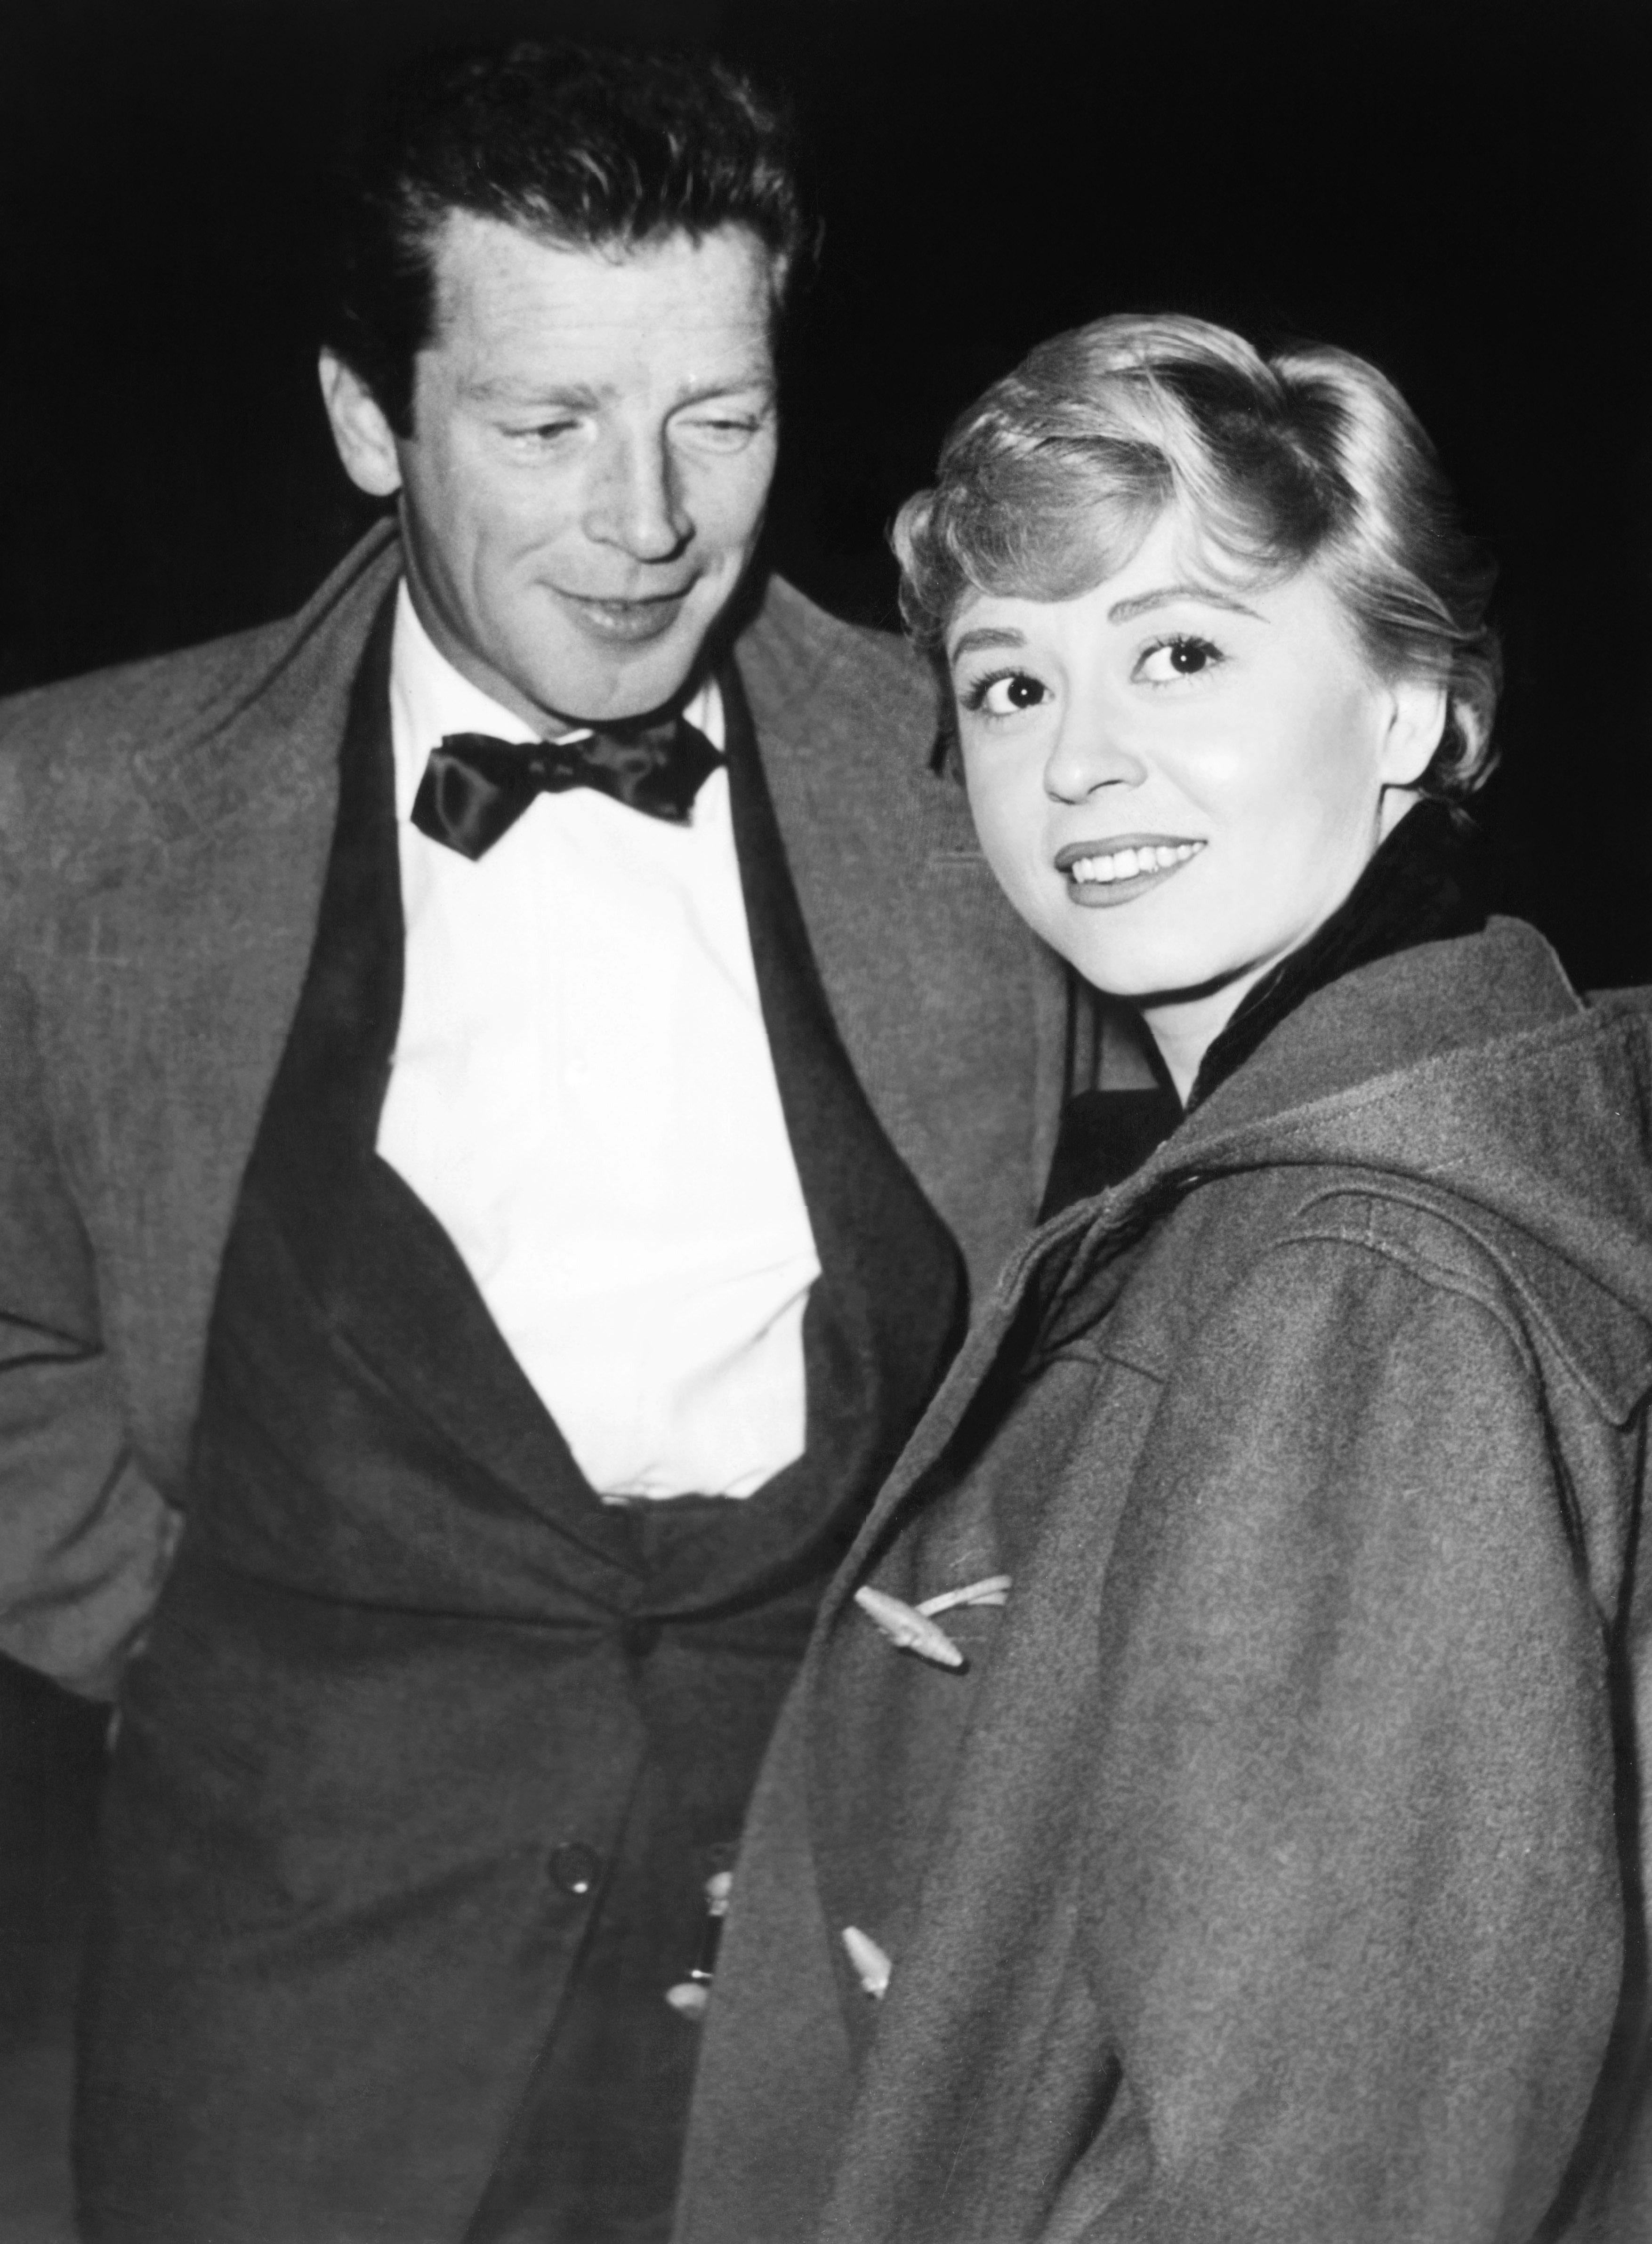 Nel 1955 con il coprotagonista del film "Il bidone", Richard Basehart